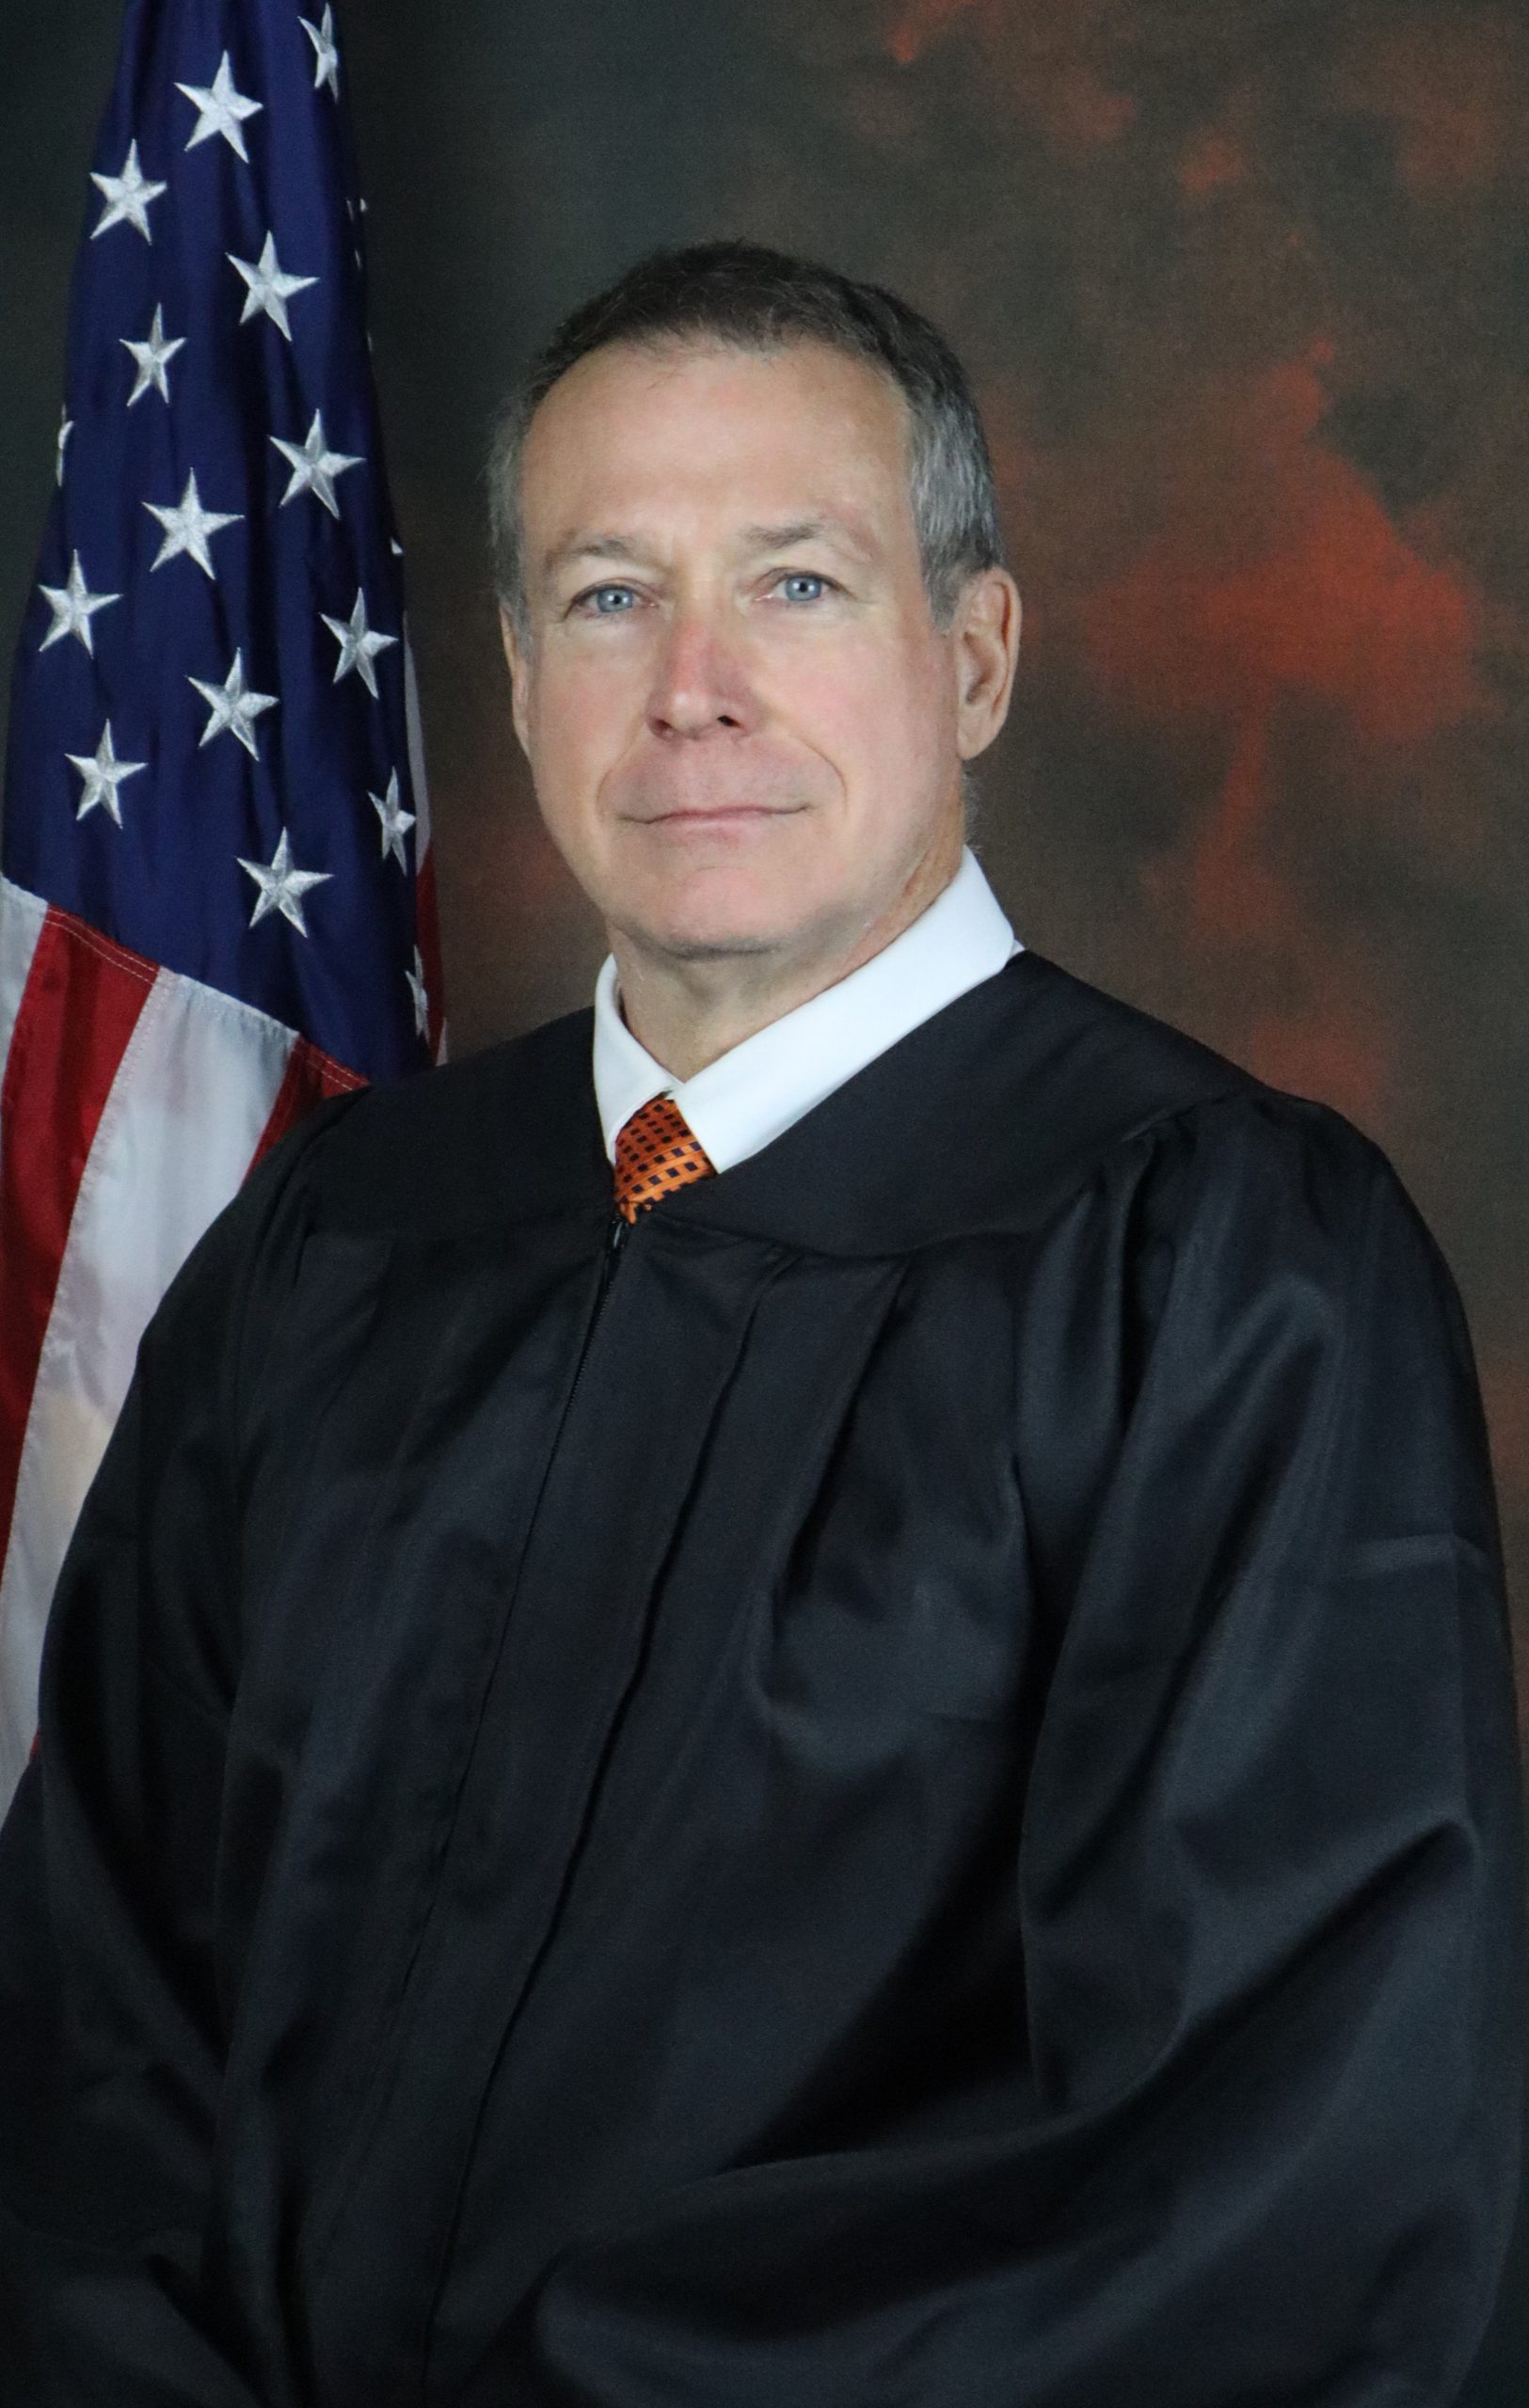 Judge Baxley